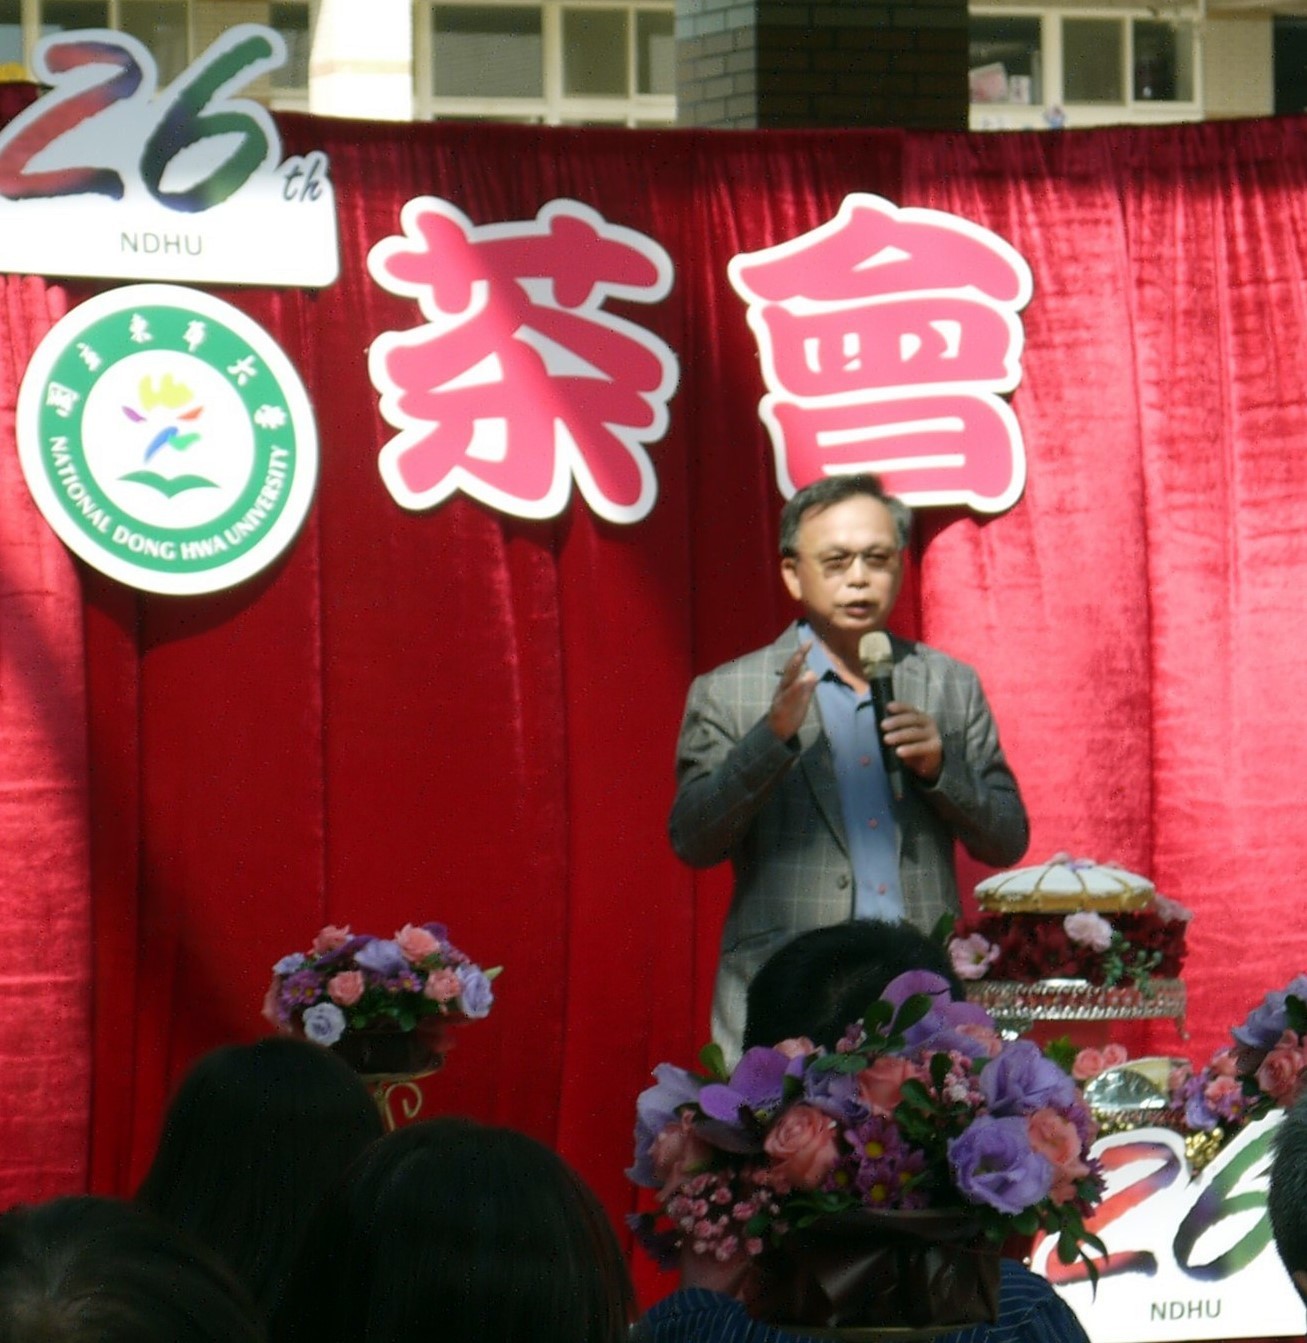 企業系傑出校友趙俊隆先生代表校友總會常務理事致詞